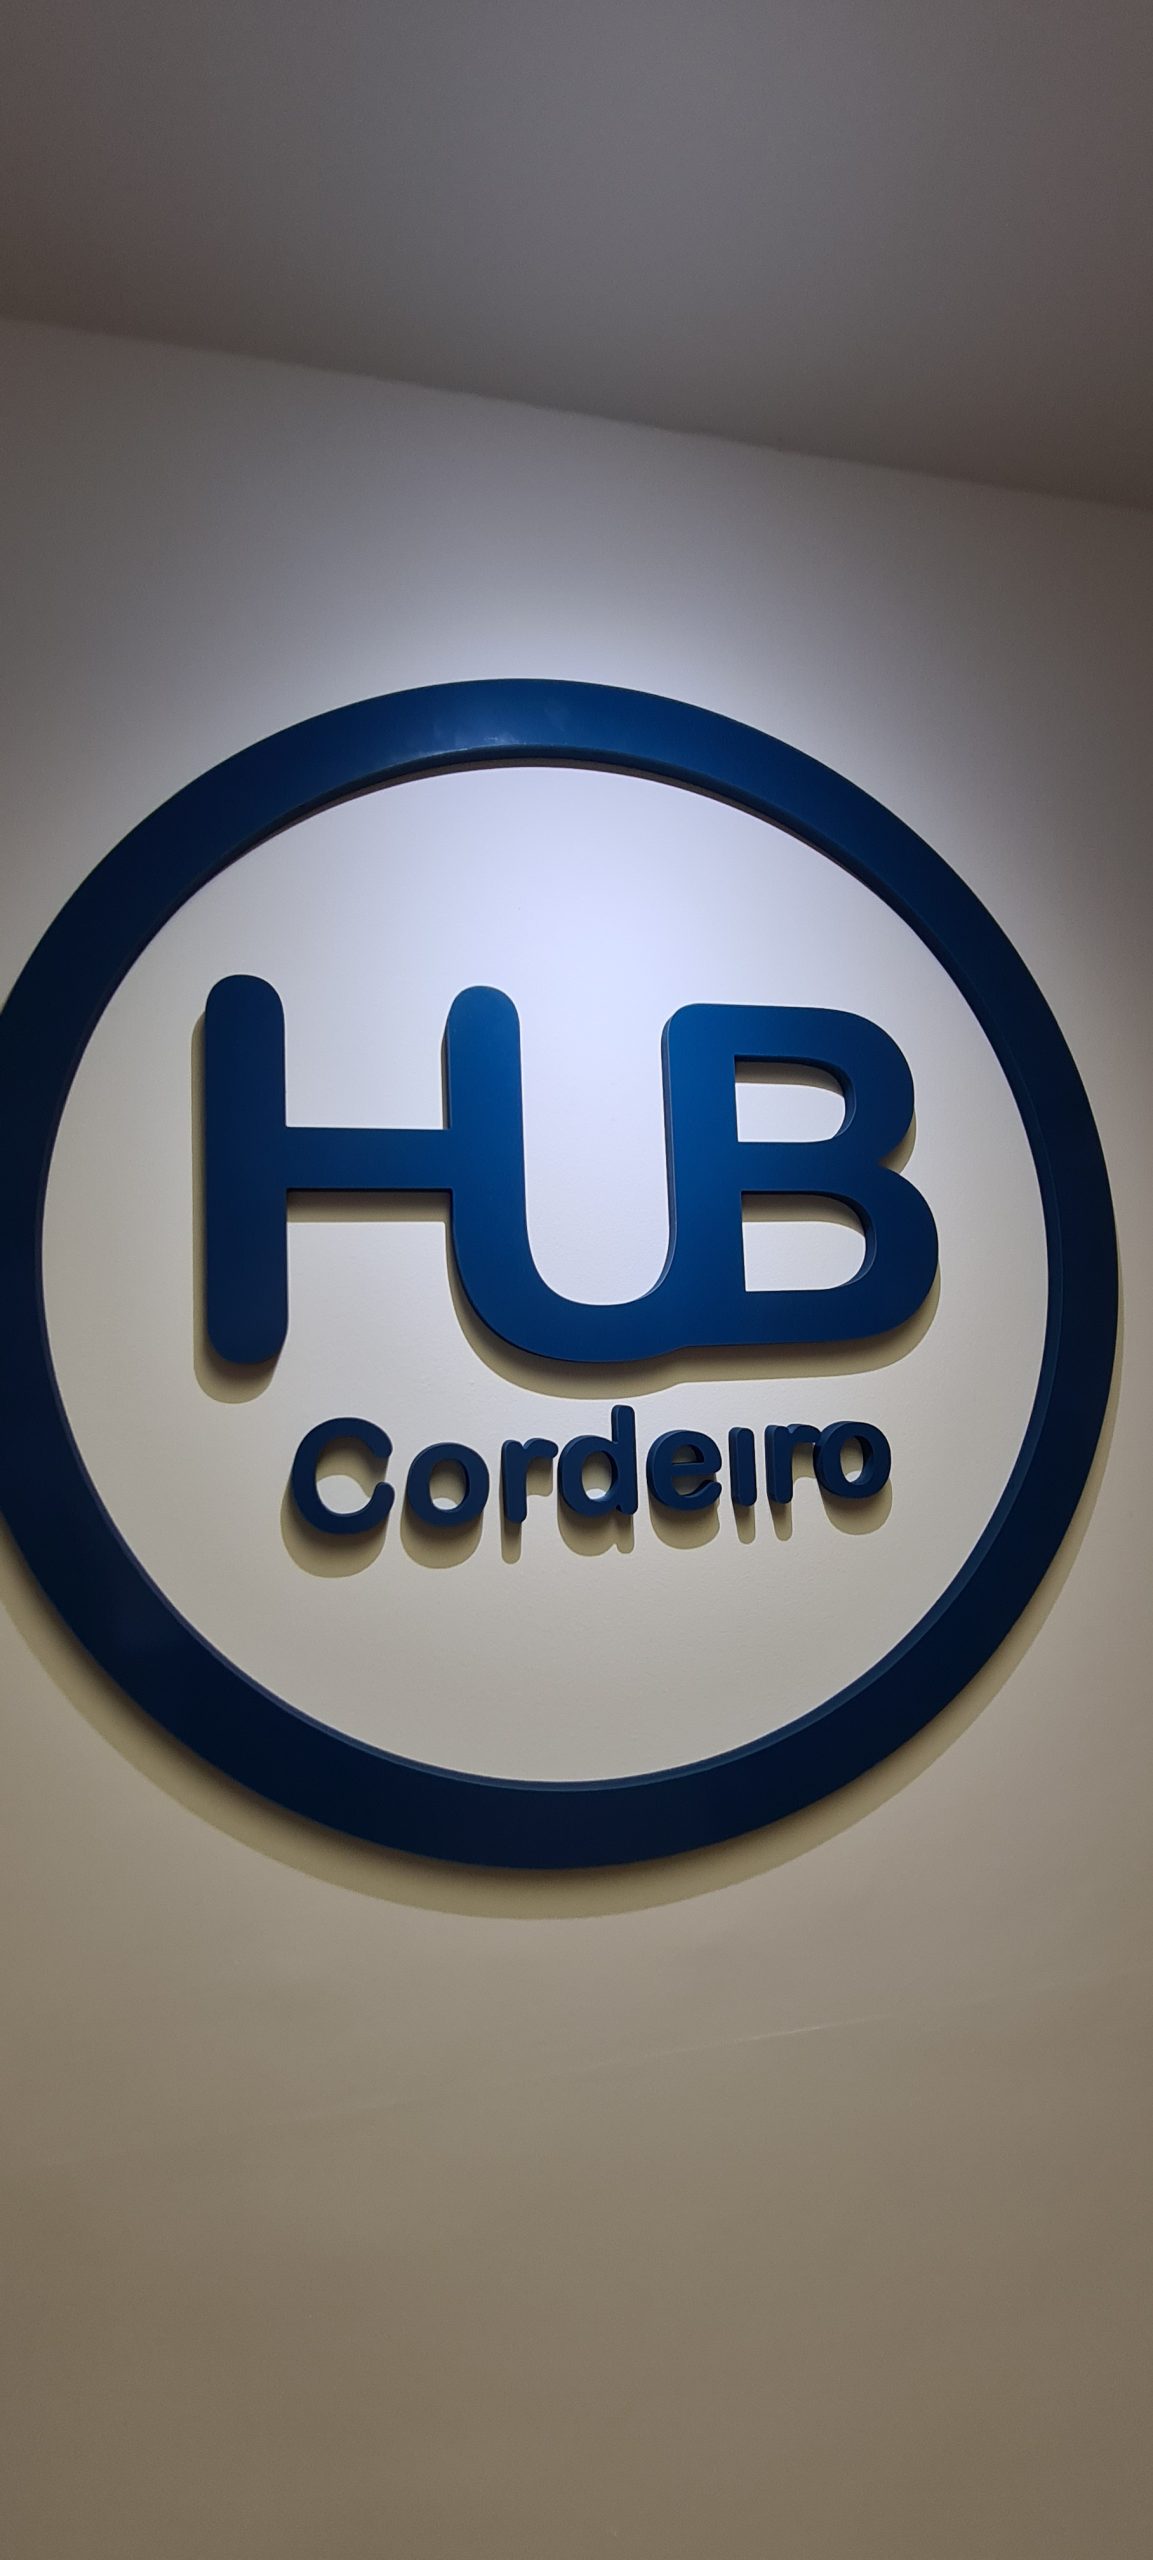 Cordeirópolis inaugura um Hub de tecnologia e inovação